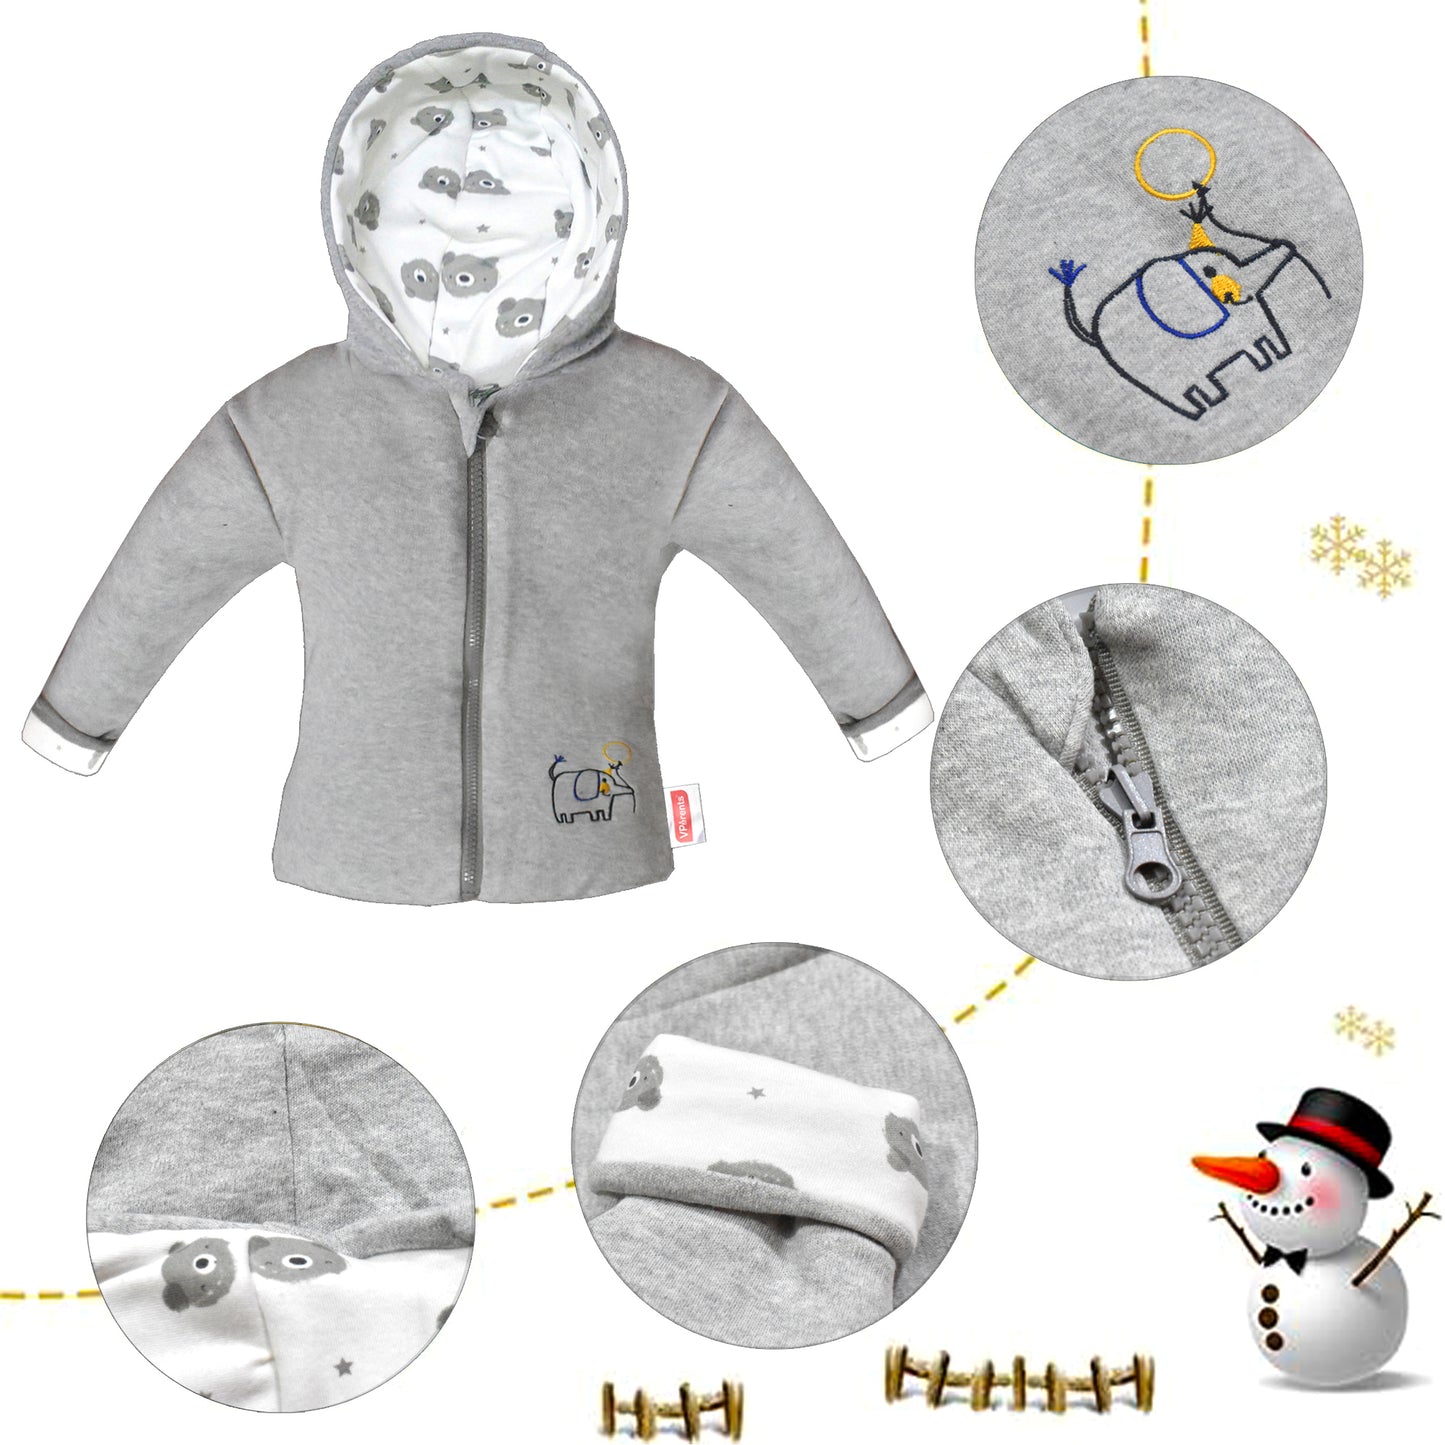 VParents Baby Unisex Kid's Regular Jacket ( Grey)